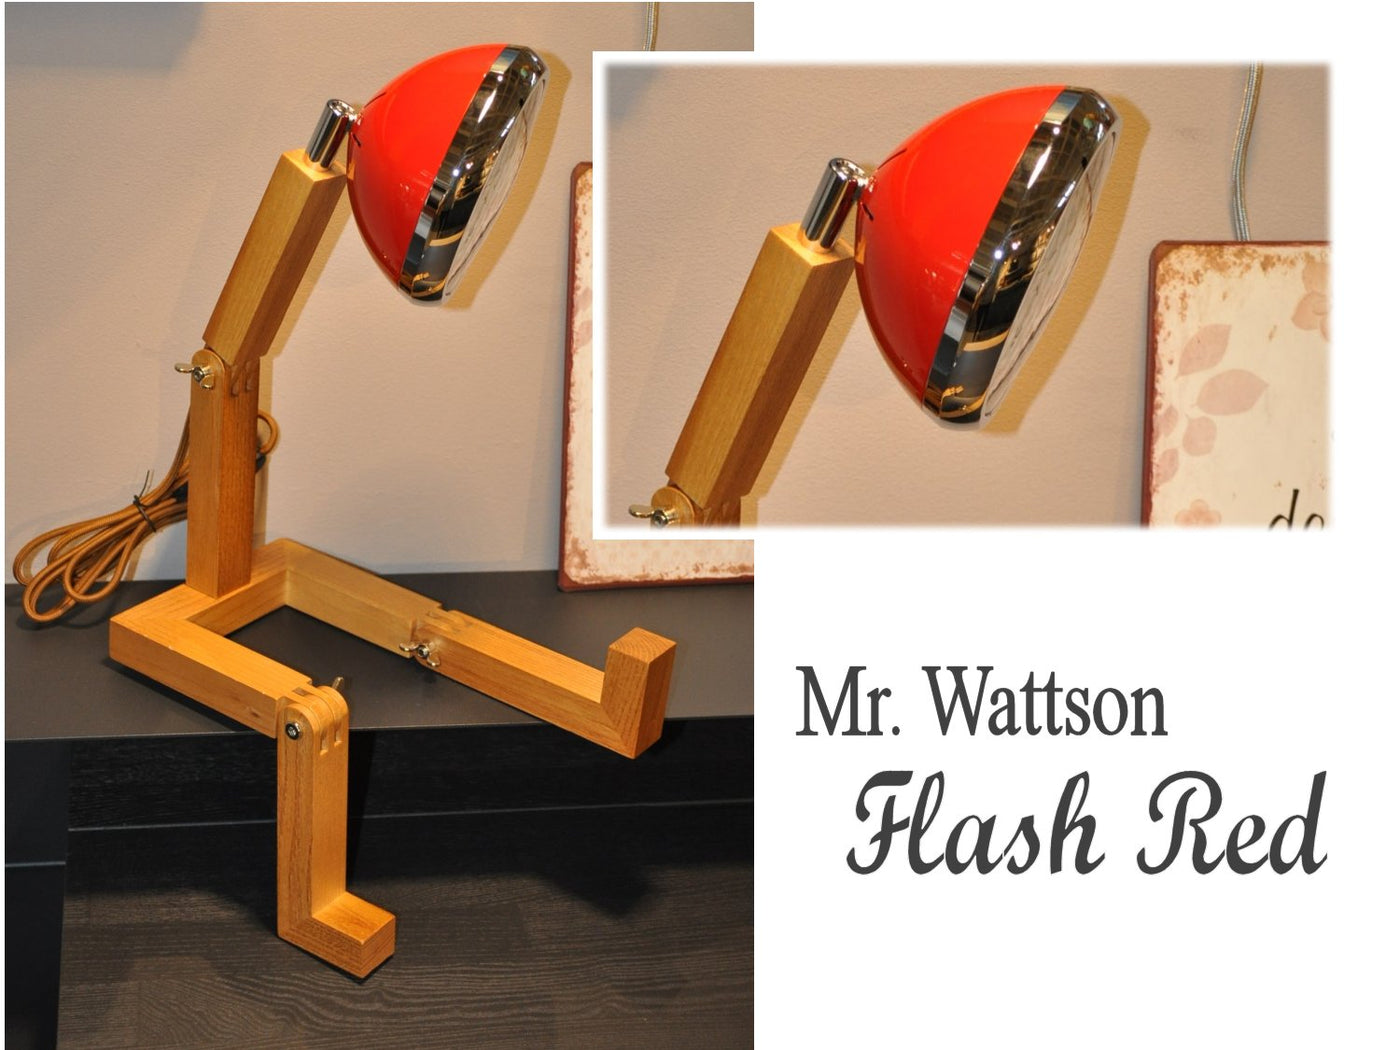 Original Mr. Wattson Retro Tischlampe in Knall-Rot / Flash Red Schöne Deko